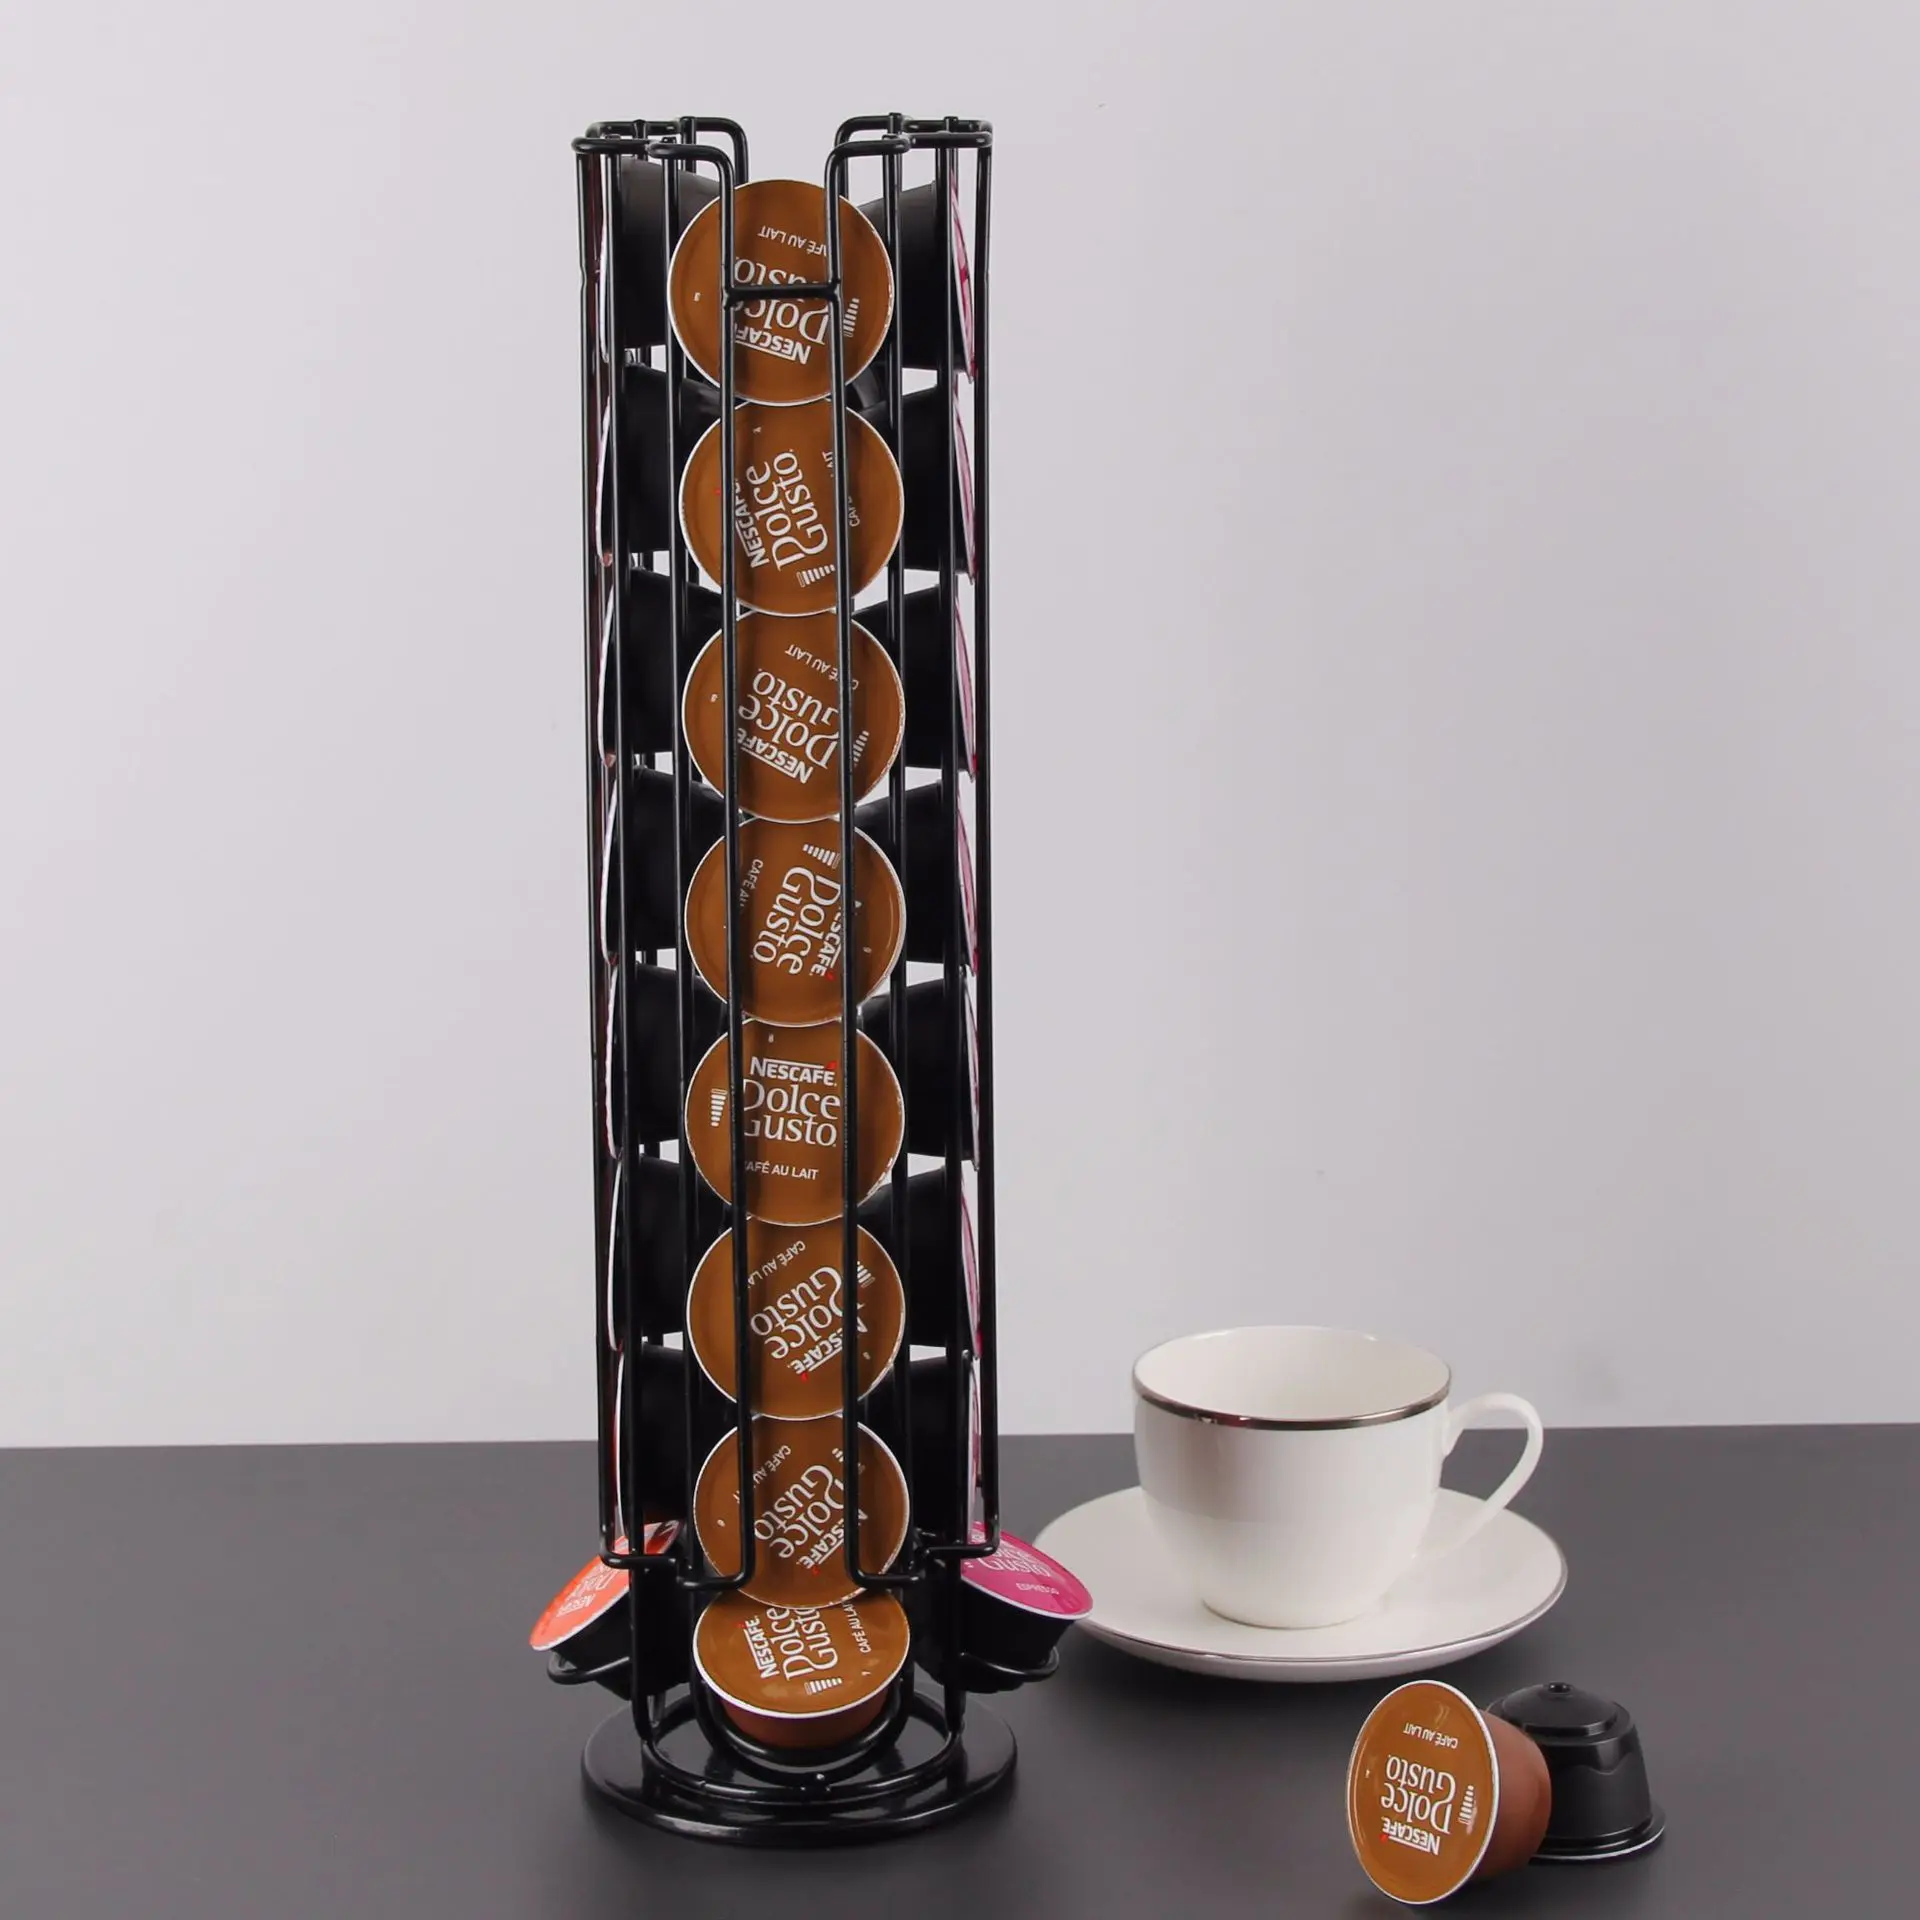 

Вращающийся держатель для капсул Dolce Gusto, металлический держатель для кофейных подставок, 32 чашки, цвет черный, дисплей, полки для хранения